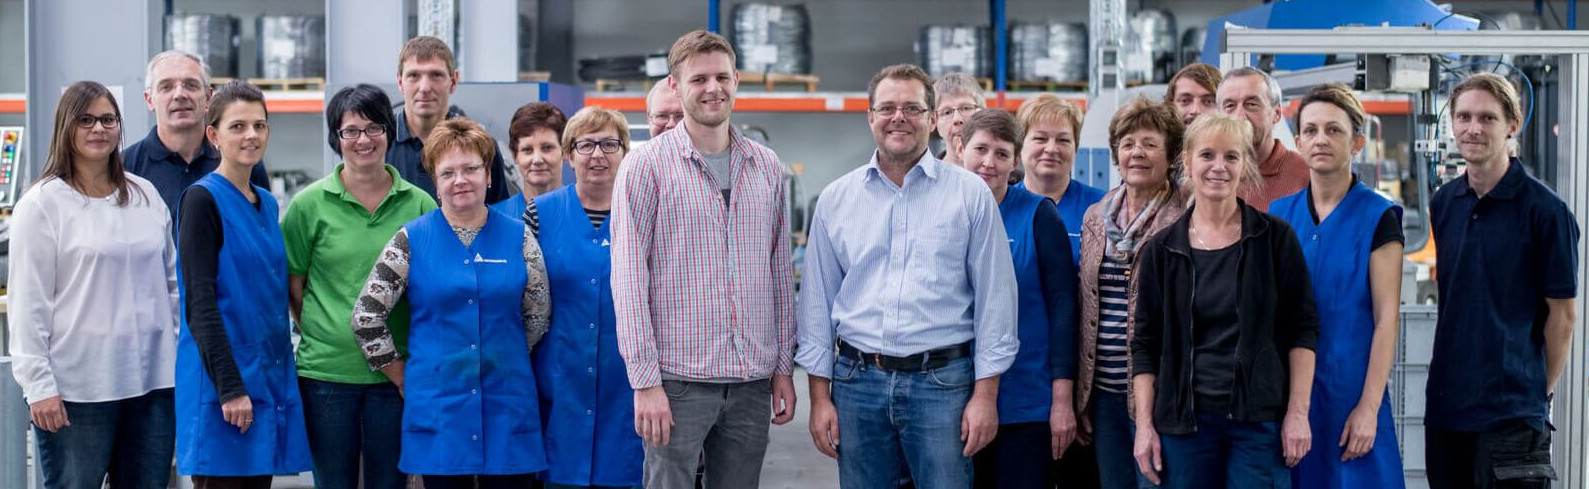 Das Team von Hinterdobler Fabrikations GmbH | Langjährige Erfahrung kombiniert mit frischen Ideen